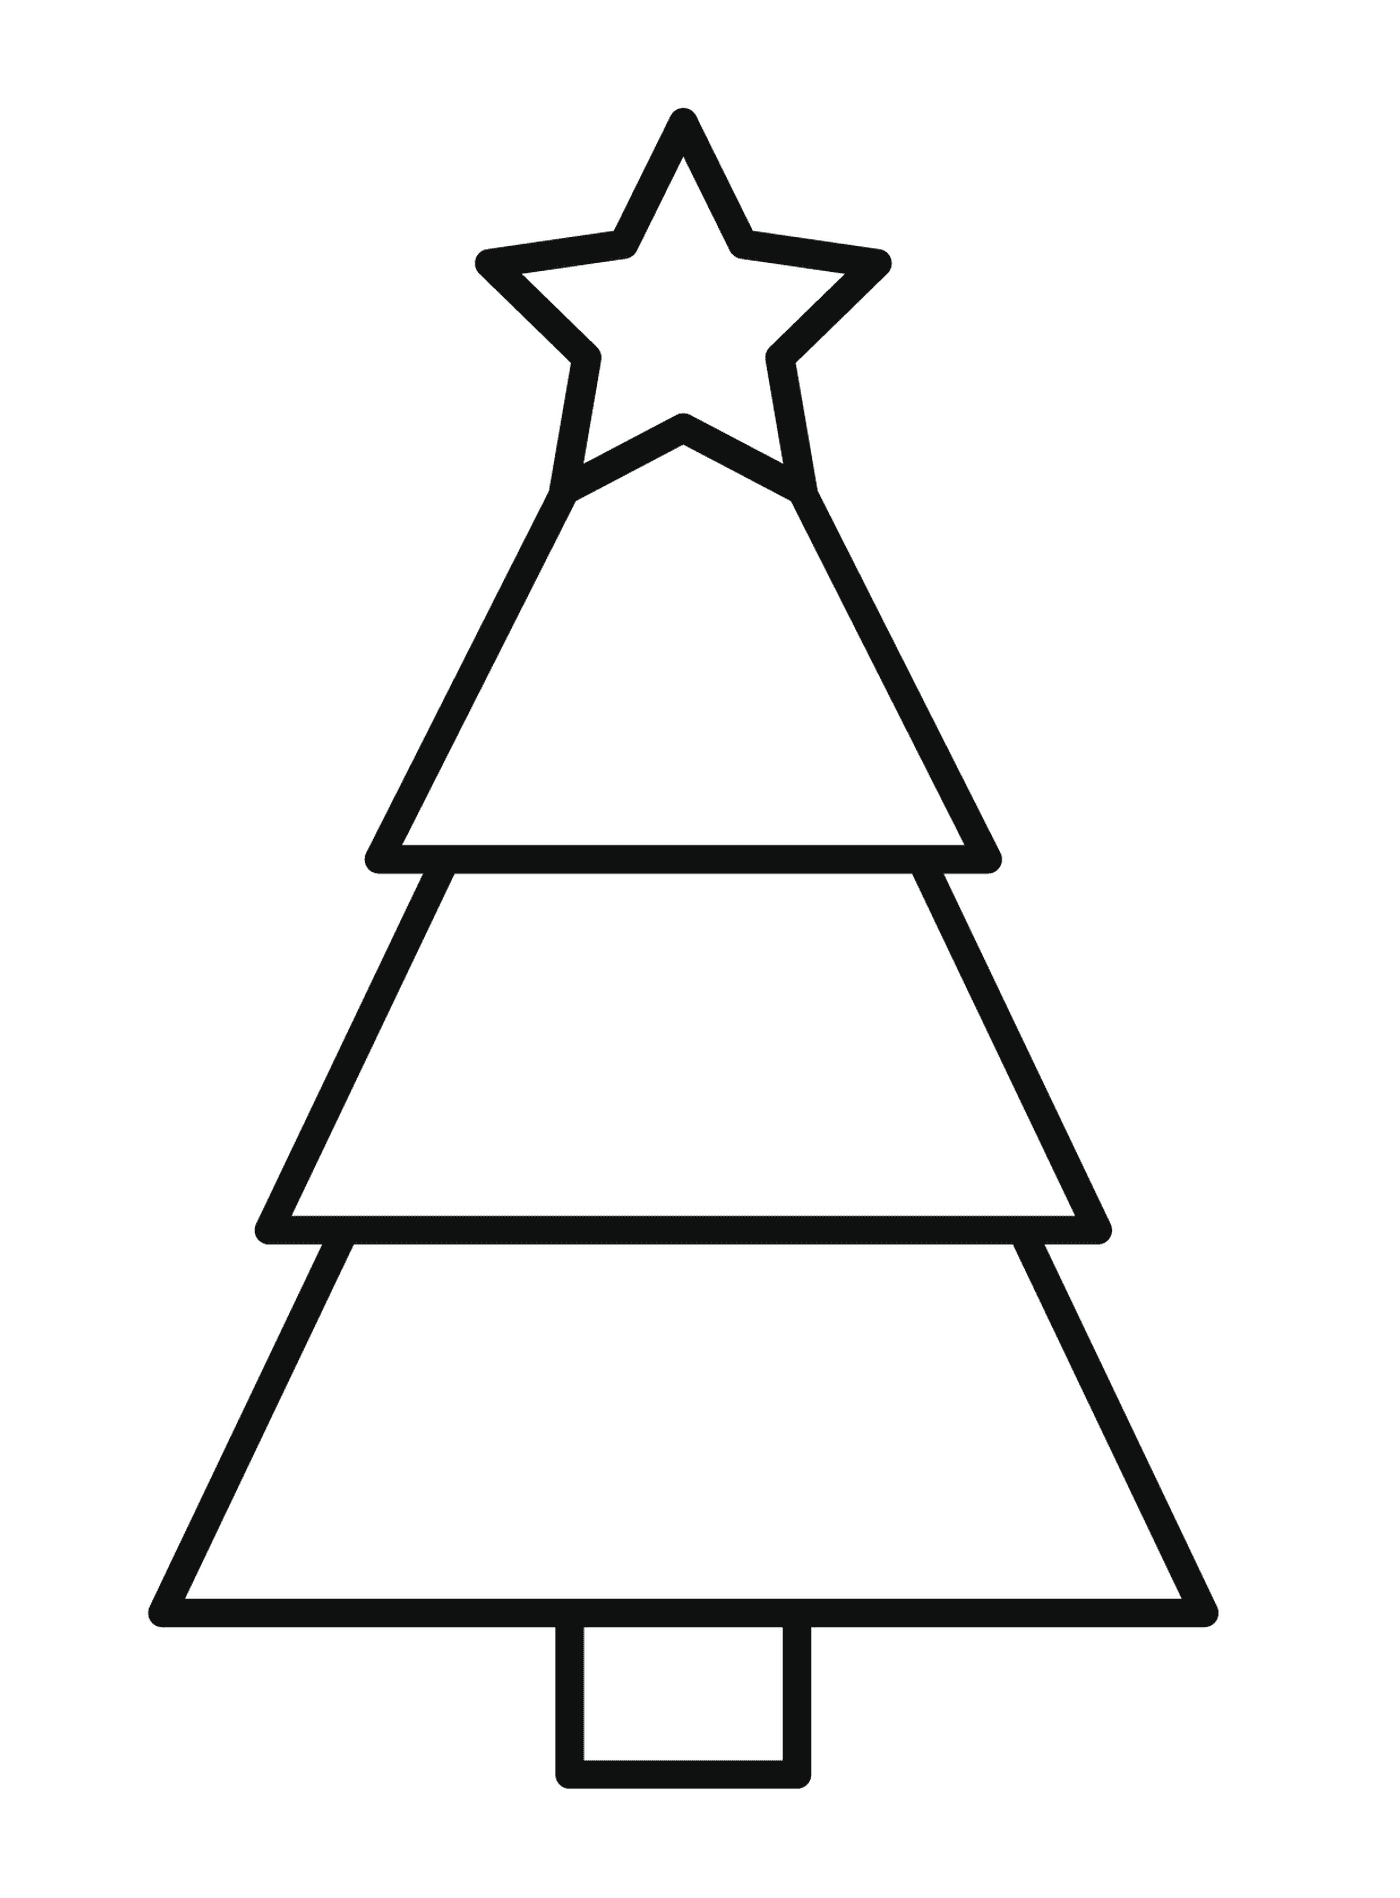  Uma árvore de Natal simples 